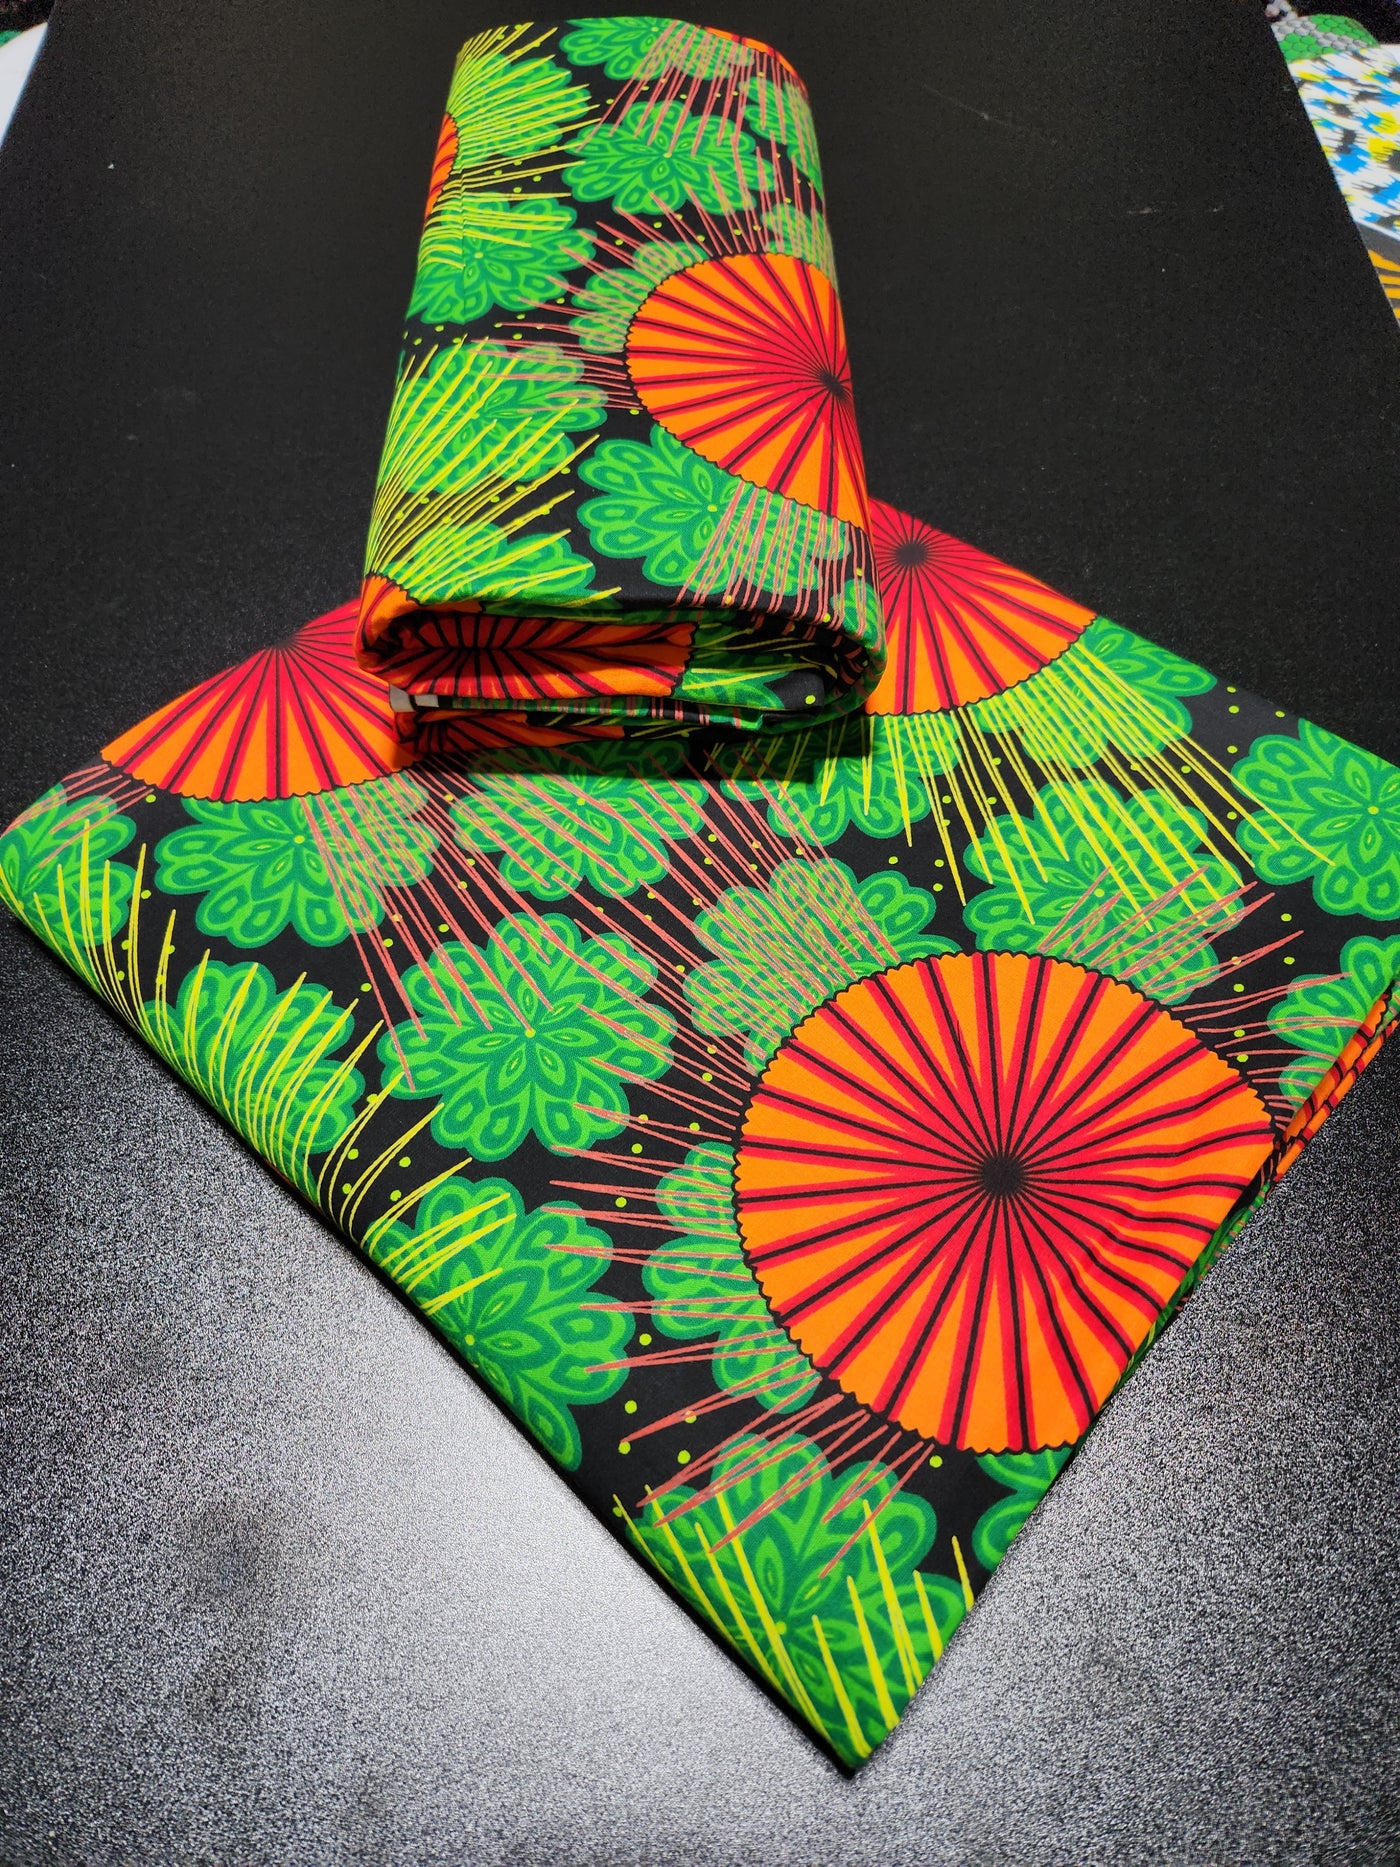 Green Ankara Print Fabric